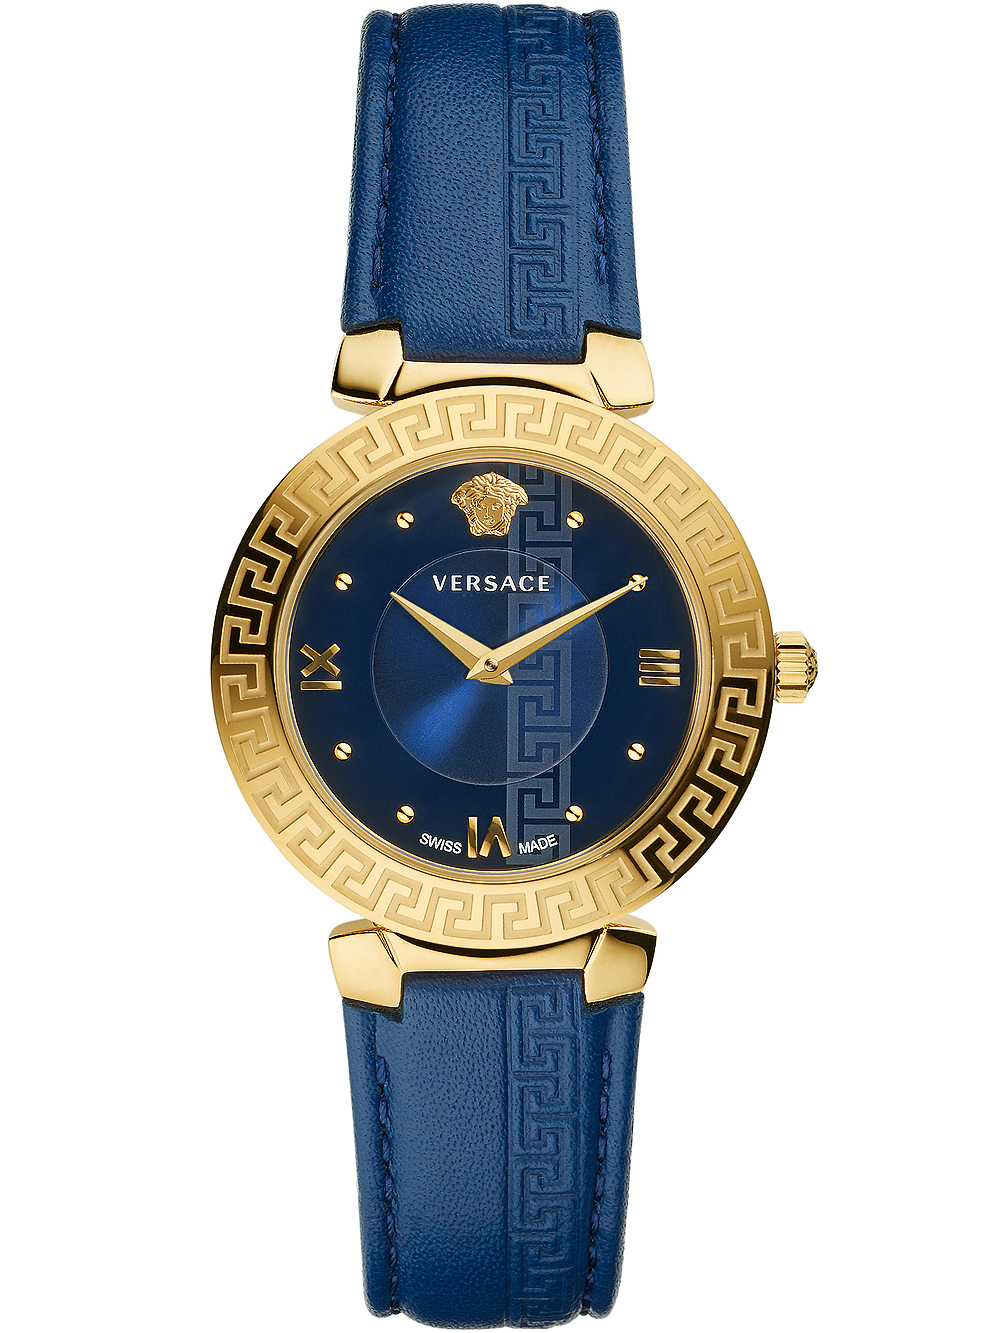 Dámské hodinky Versace V16040017 Daphmis